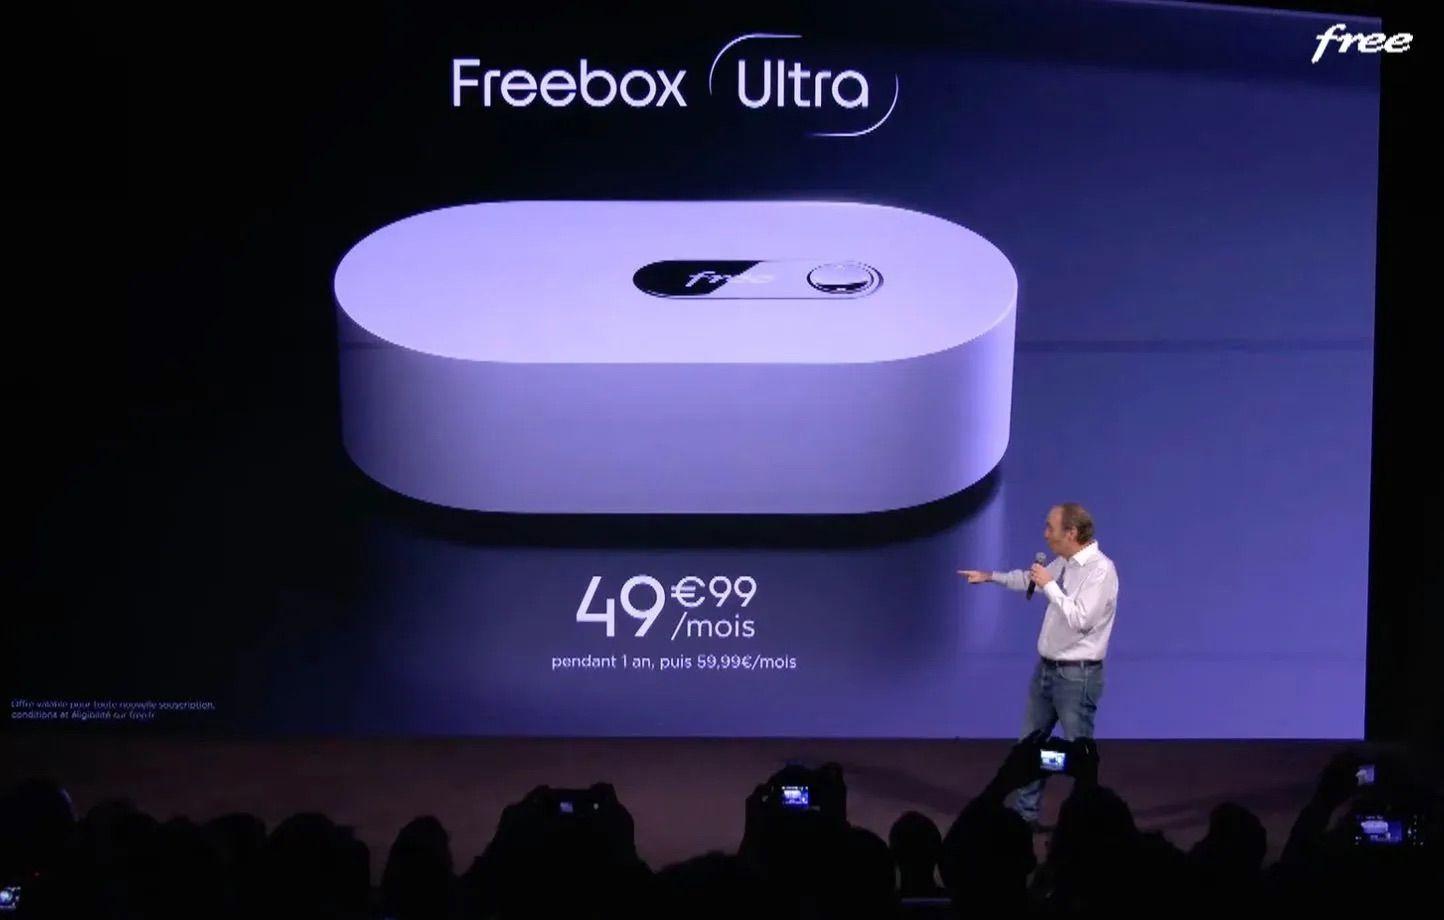 La nouvelle Freebox Ultra bouscule le marché de l’offre streaming. 